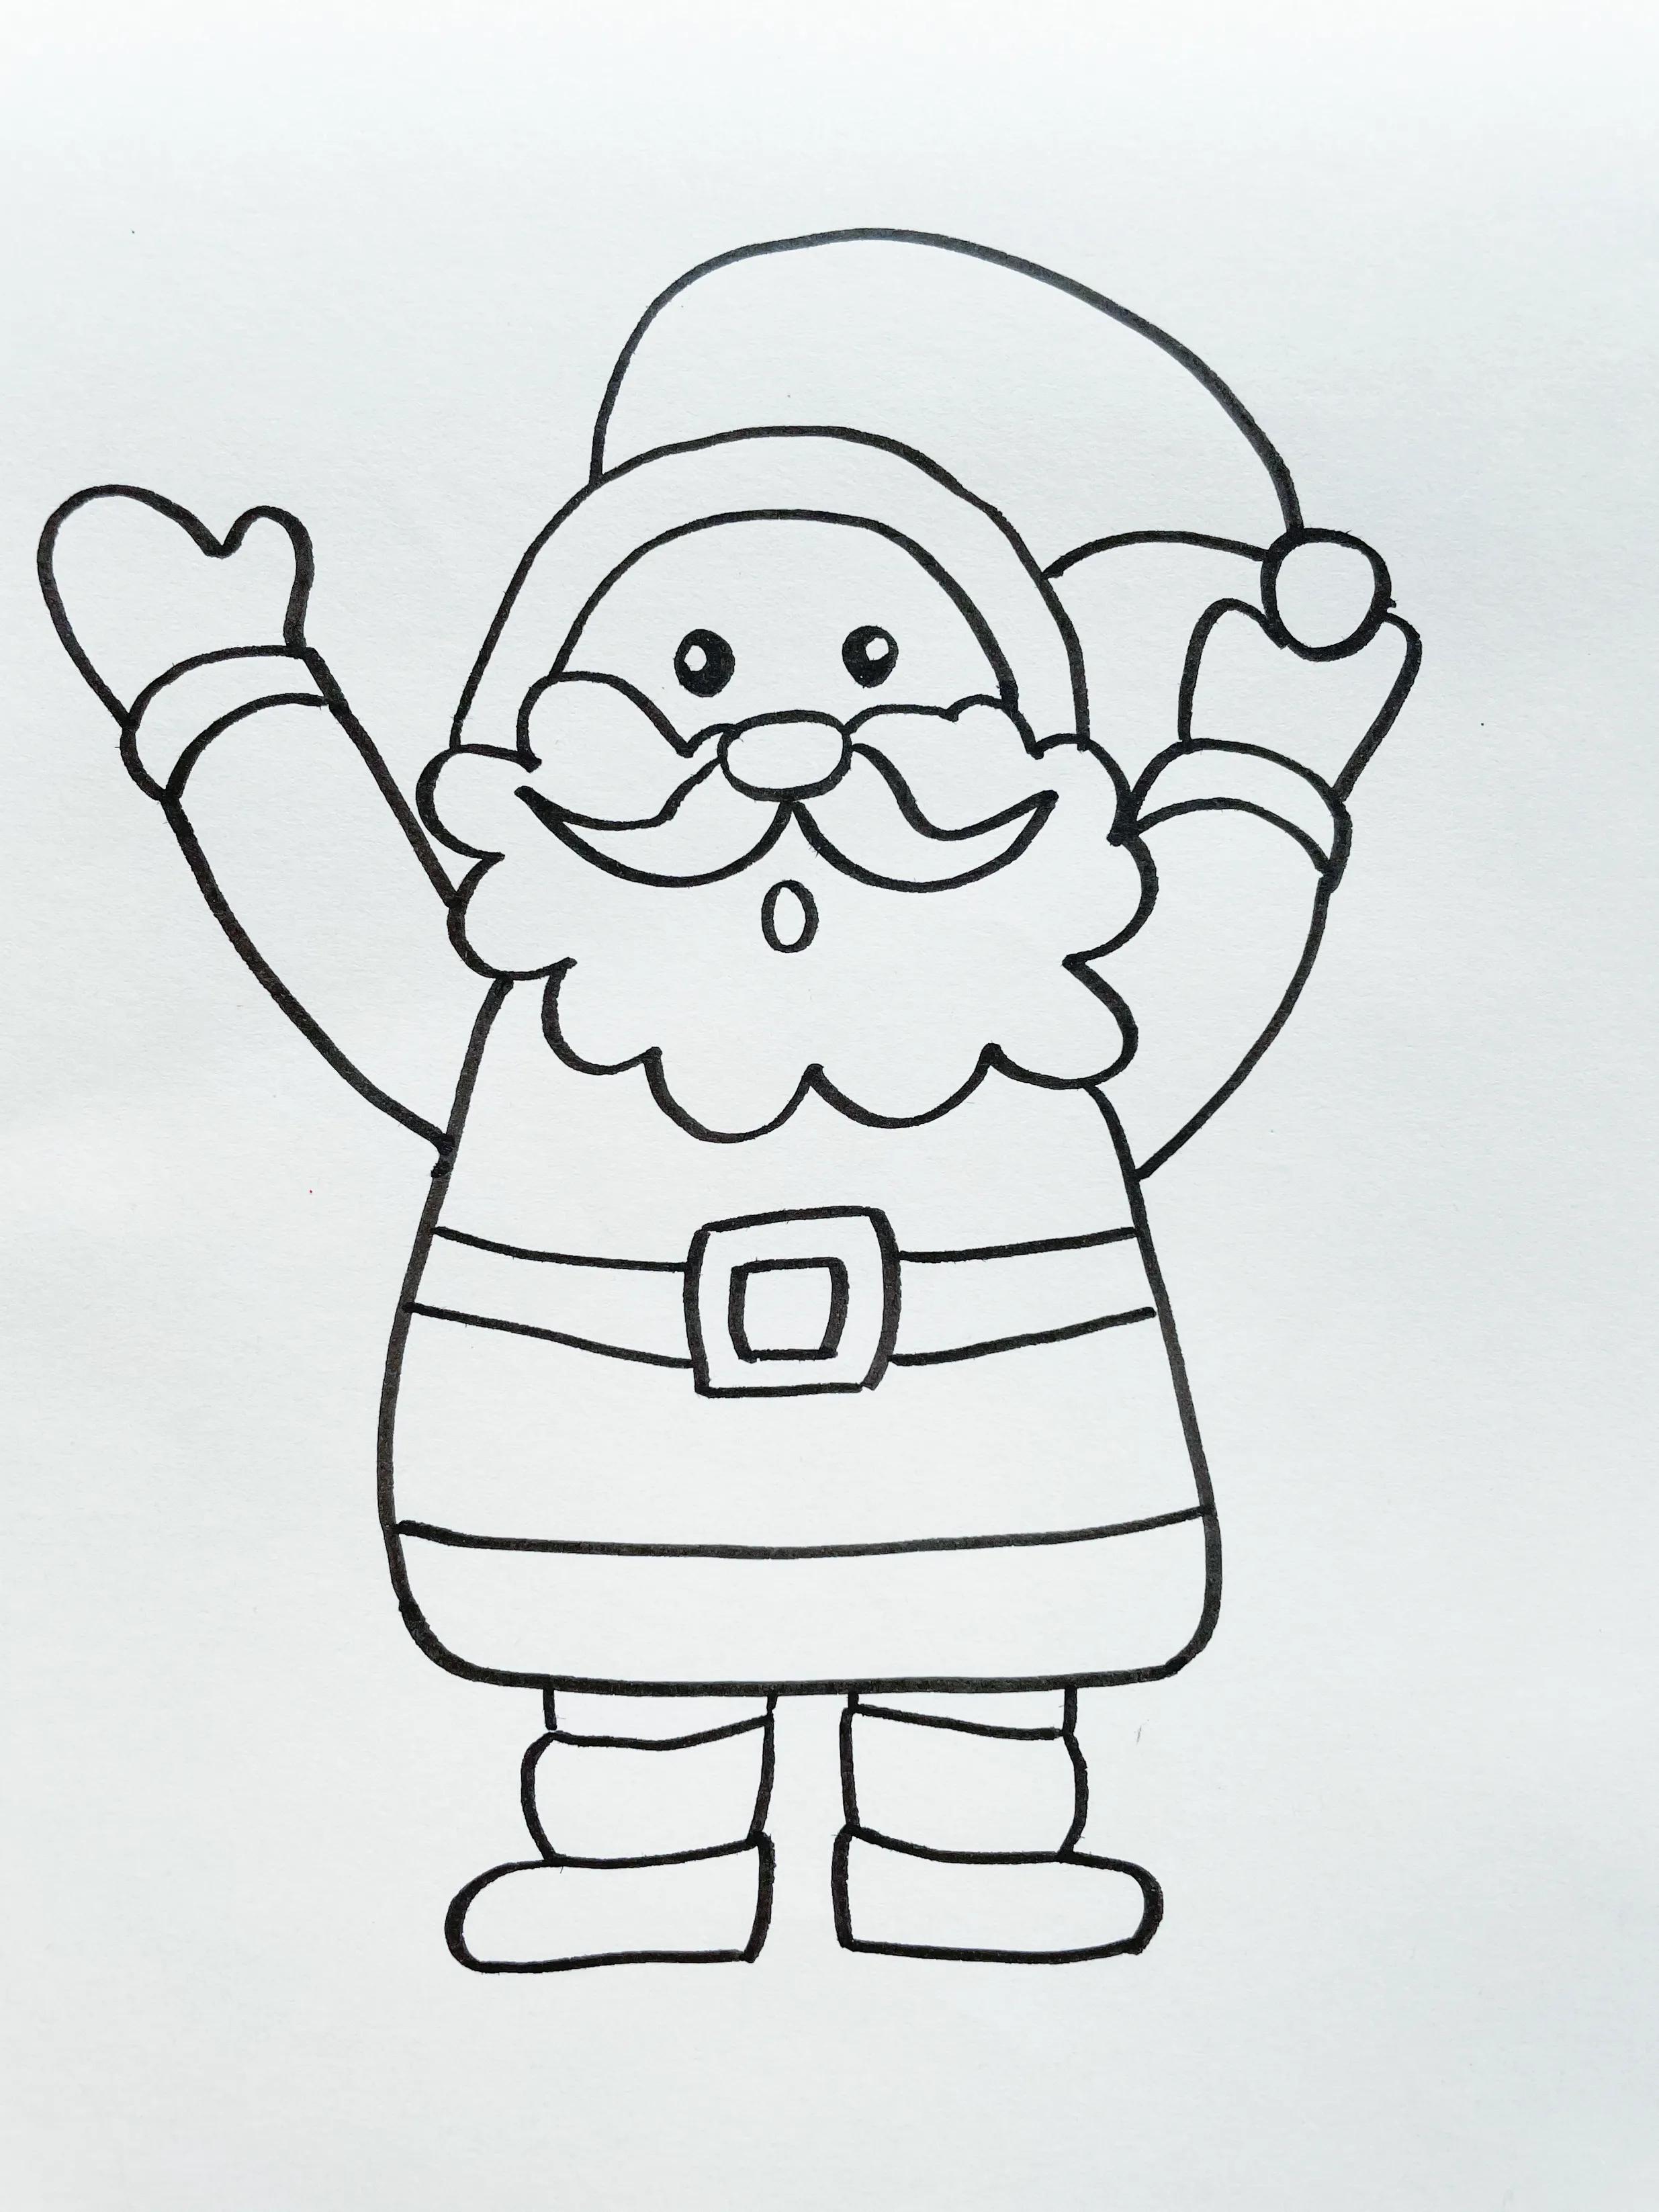 圣诞老人简笔画怎么画,以一个漂亮简单的圣诞老人步骤图